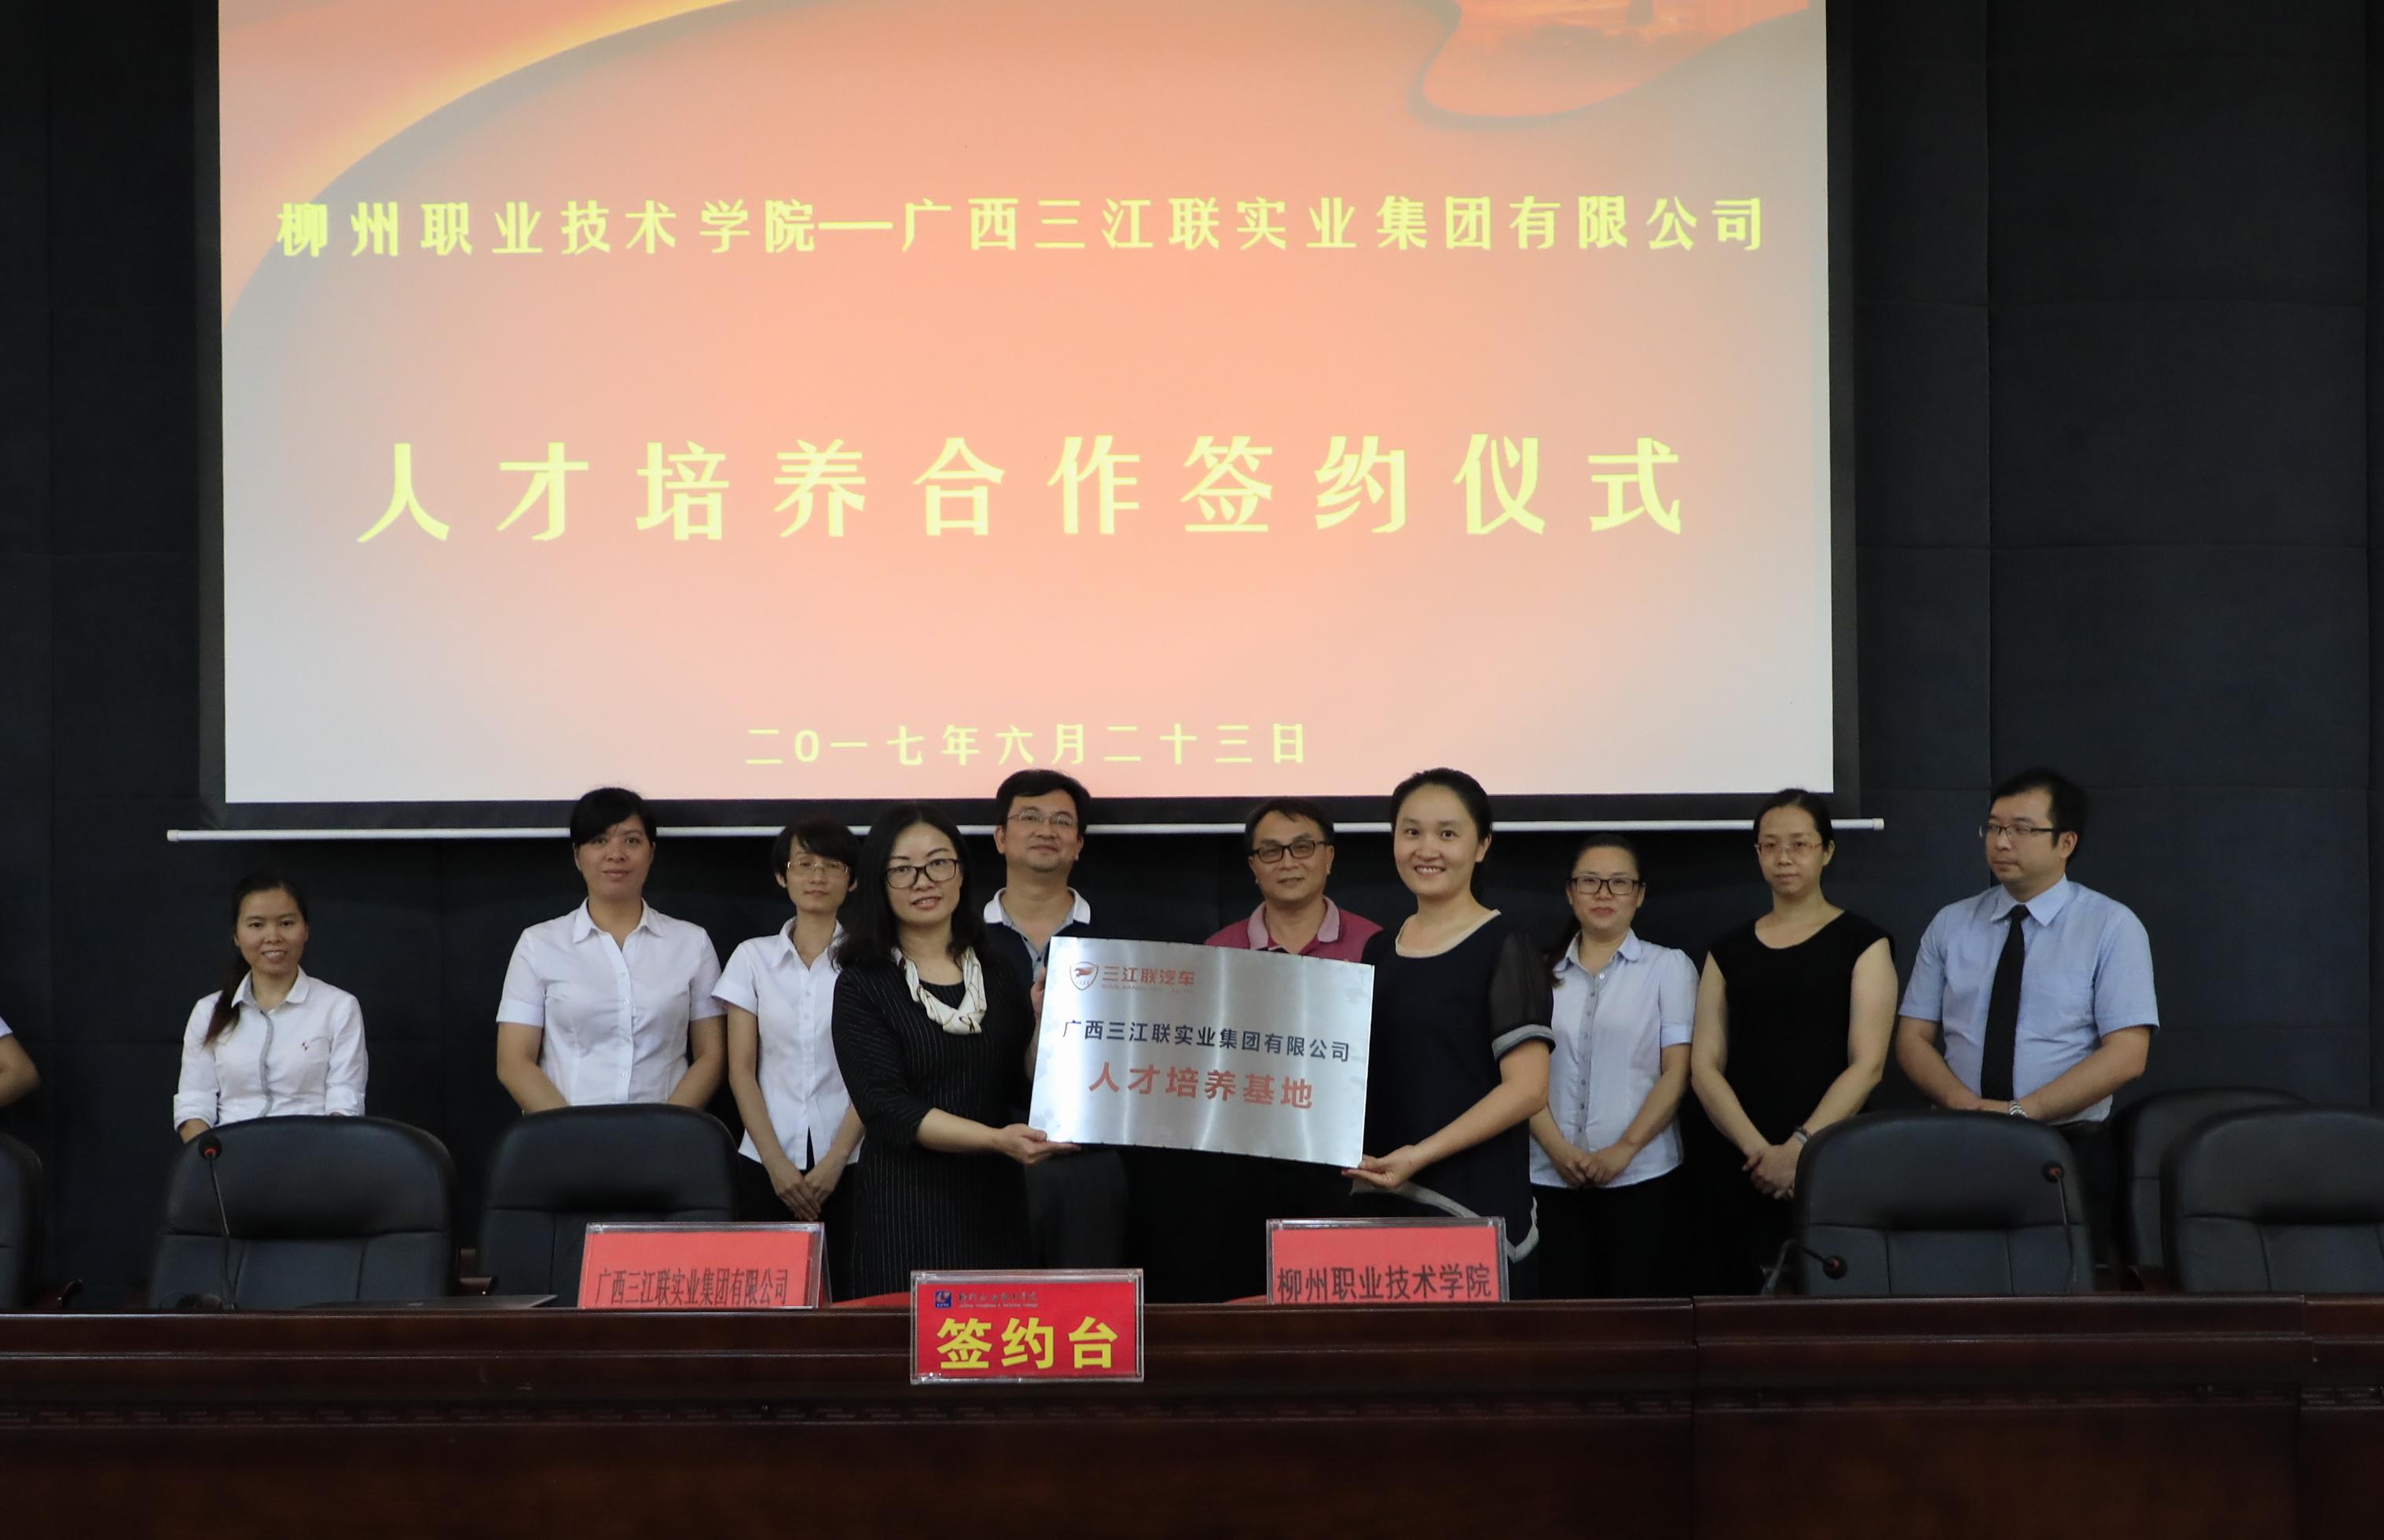 柳州职业技术学院—广西三江联实业集团有限公司人才培养合作协议签约